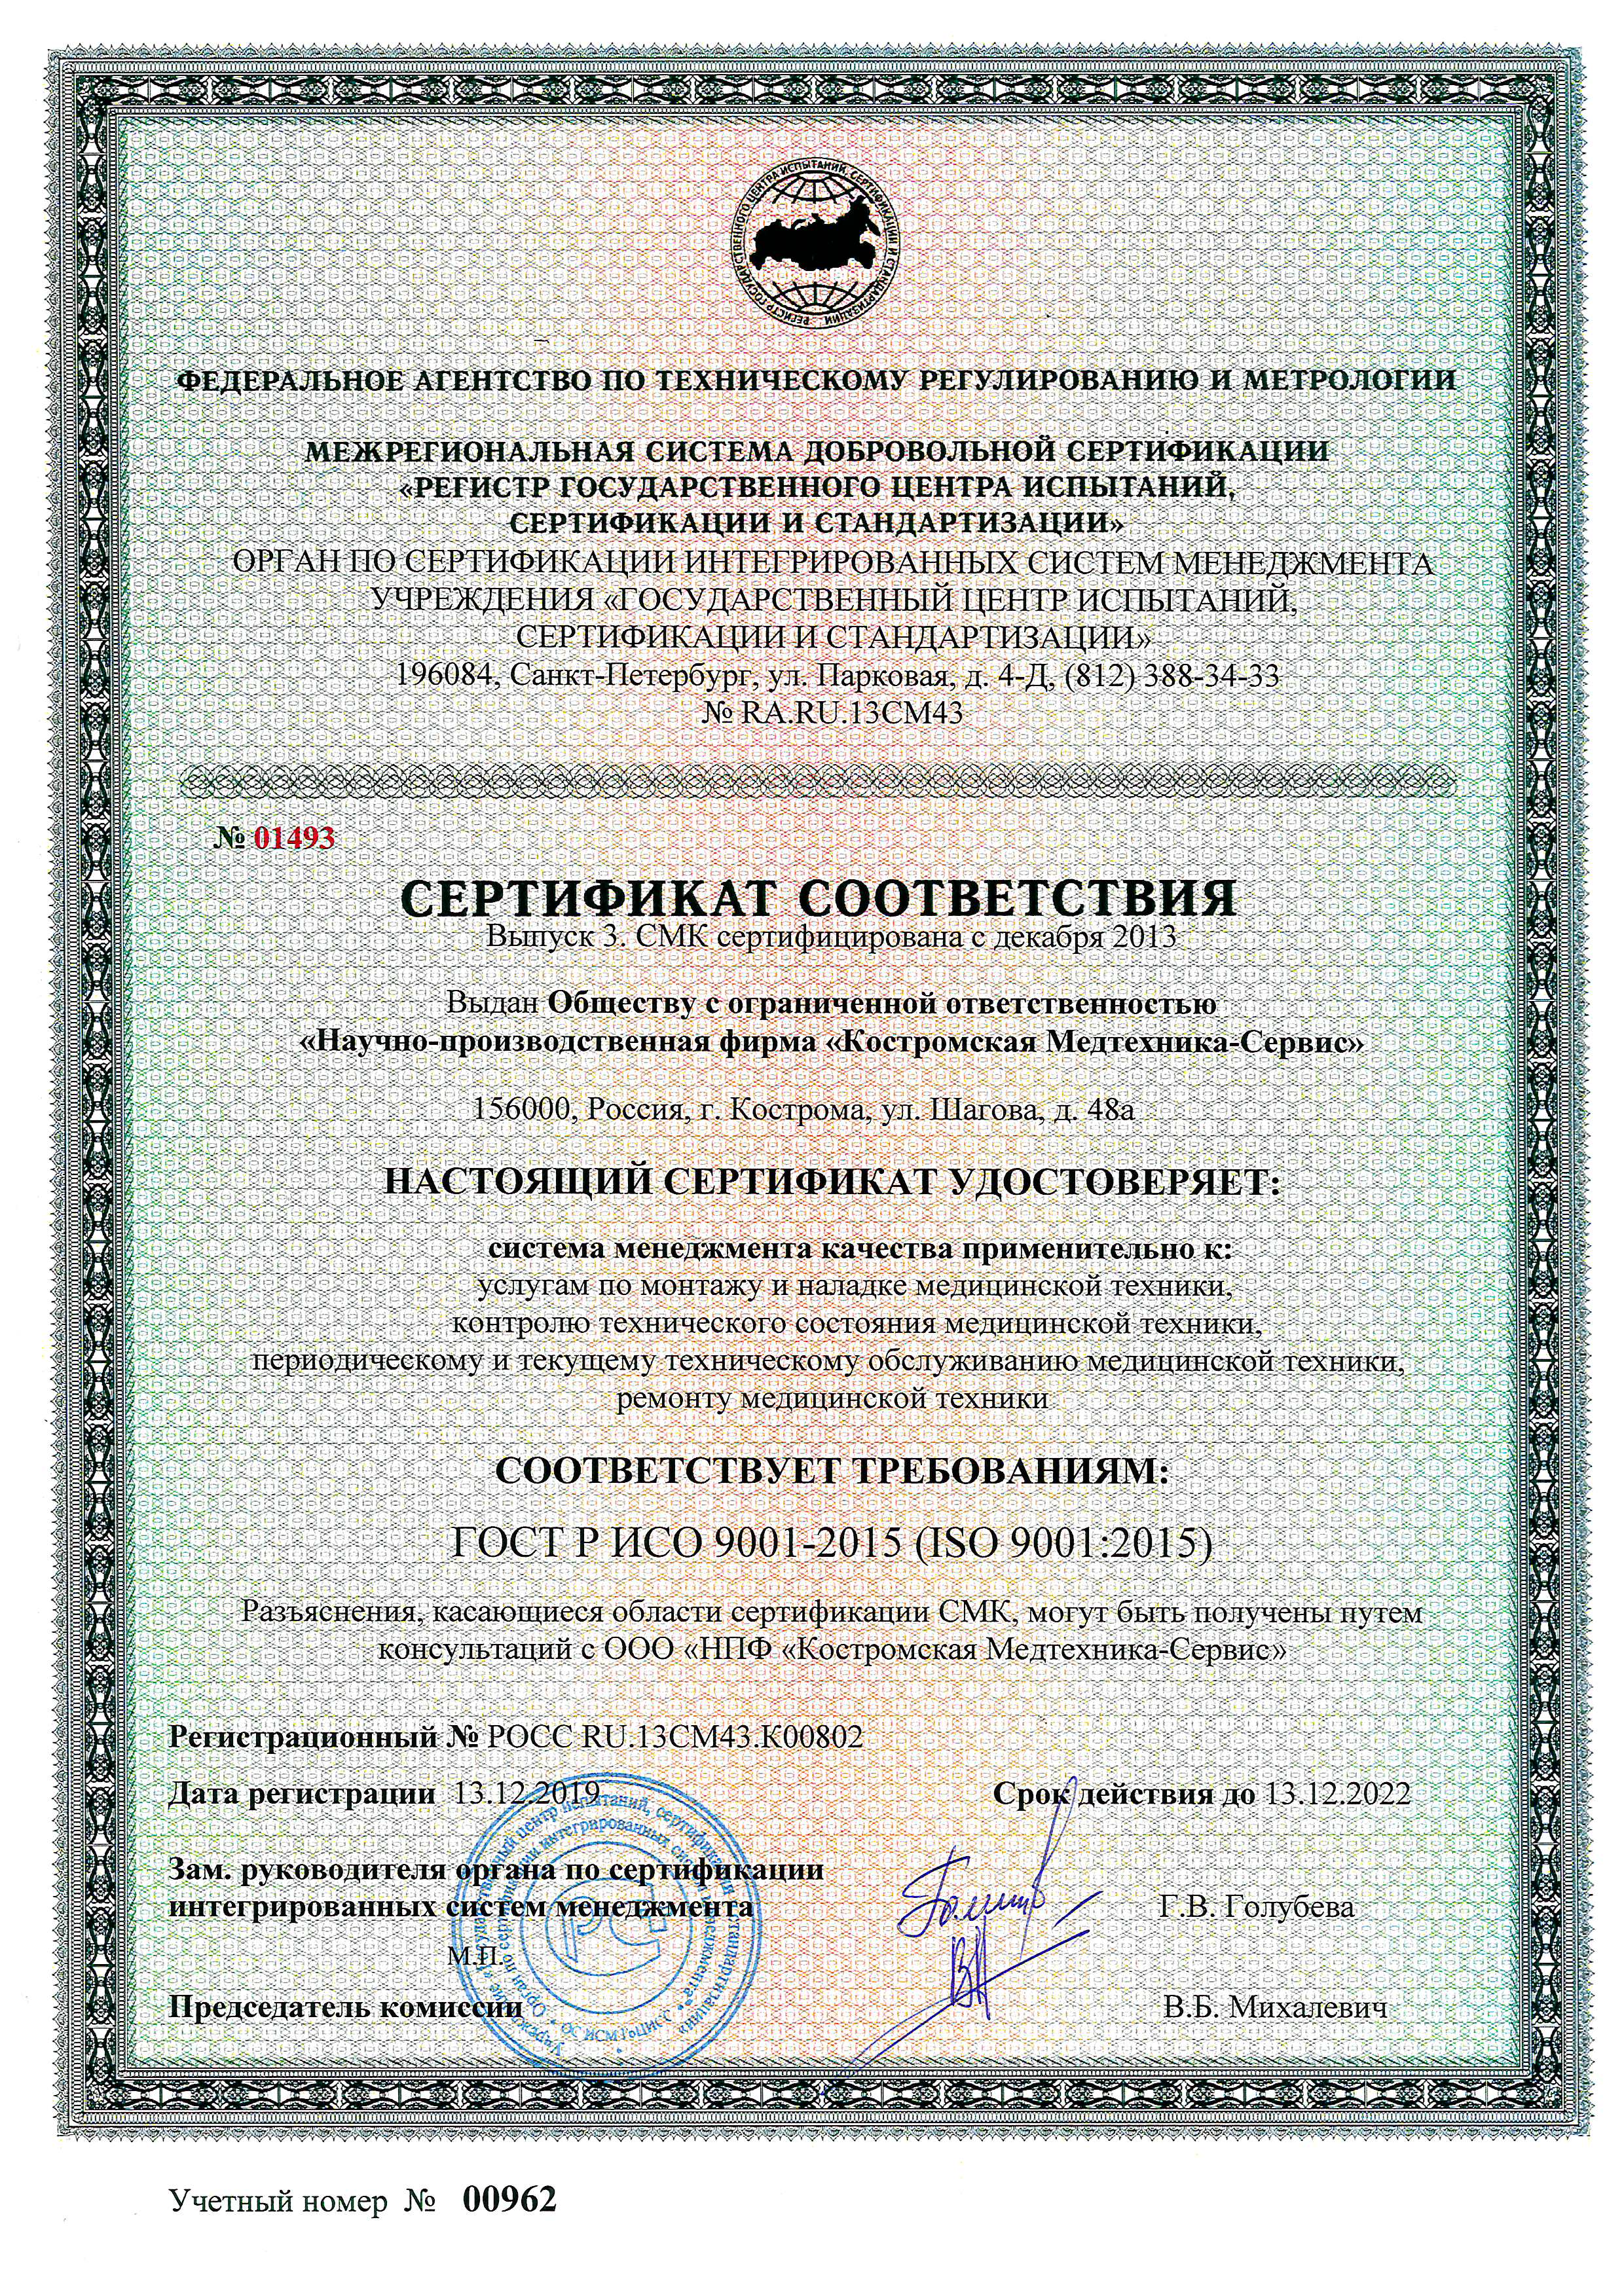 Сертификат соответствия СМК ISO 9001:2008